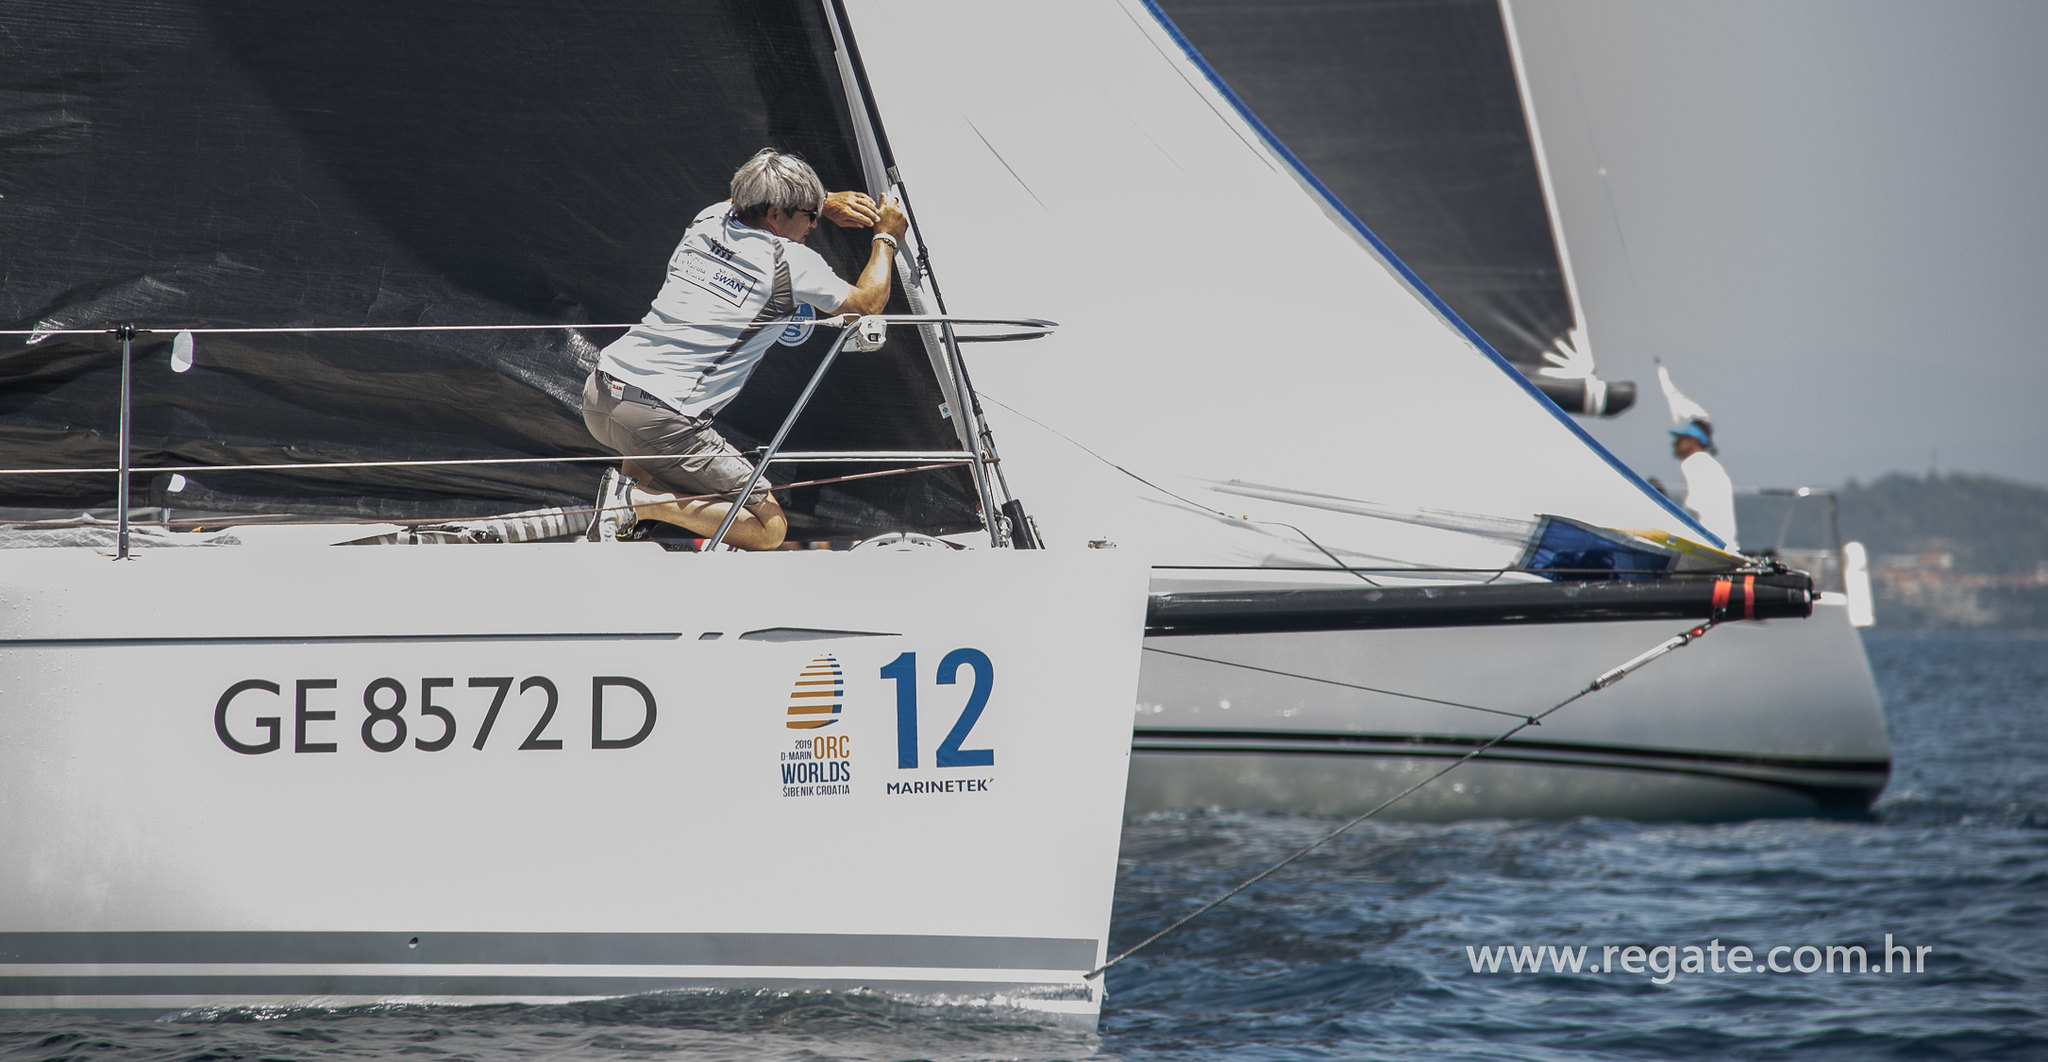 IMG_7795 - D-Marin ORC Svjetsko prvenstvo - 9